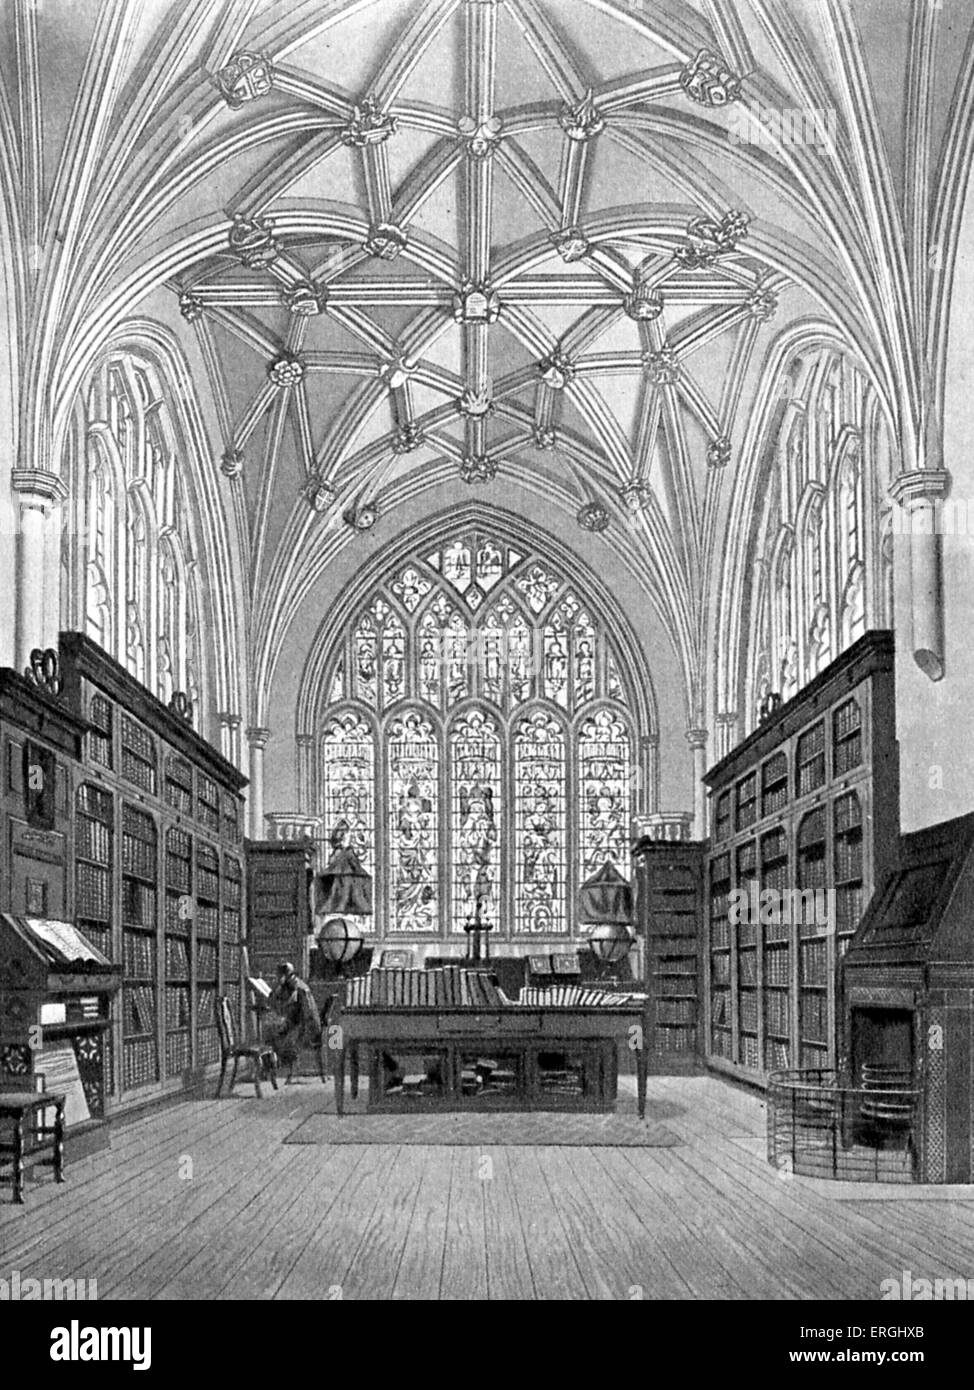 La bibliothèque du Winchester College. Gravure par William Bennett (1787 - 1830) après F. Mackenzie, c. 1816. Banque D'Images